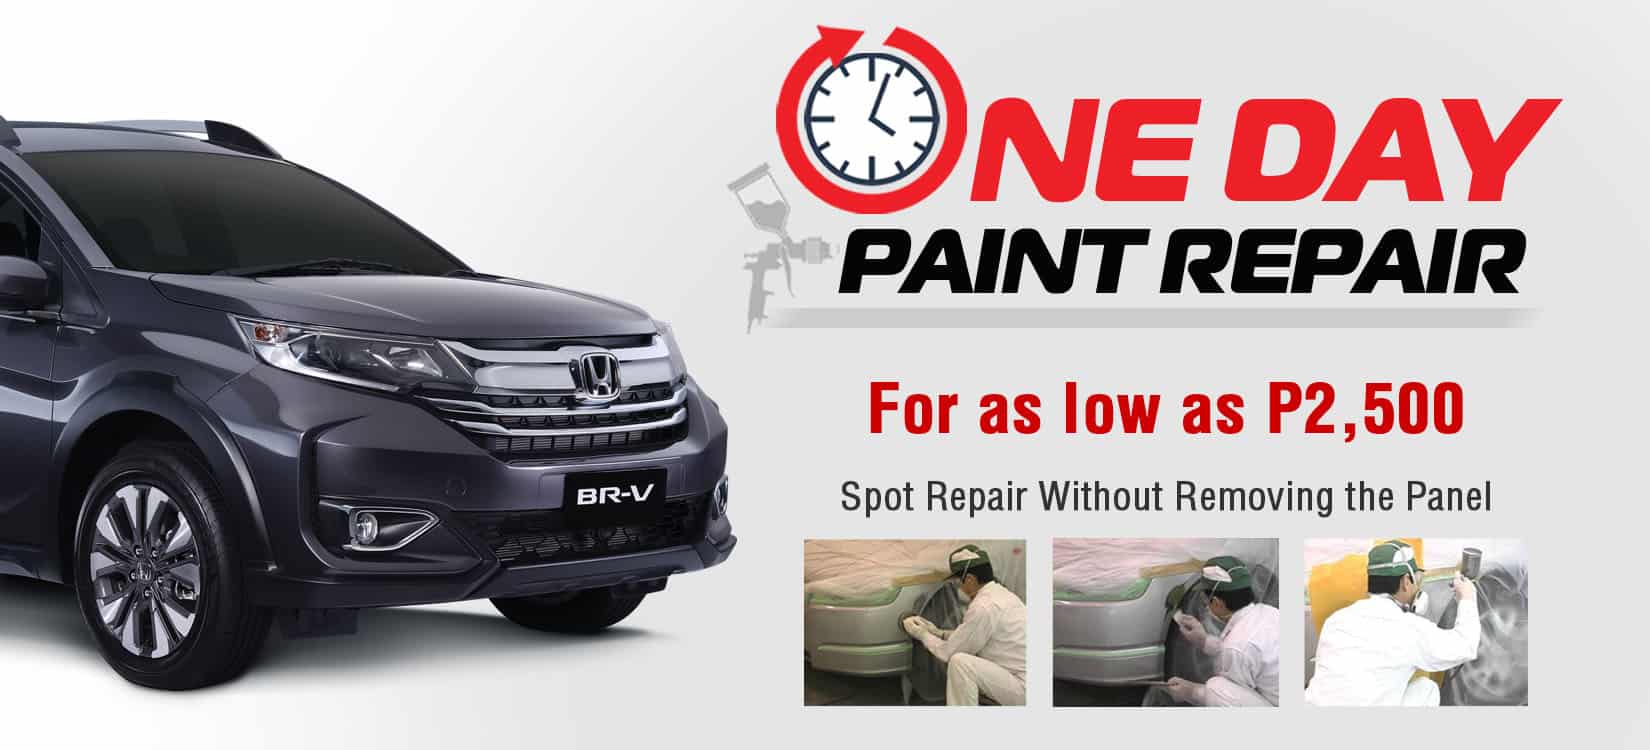 Honda Cars Philippines Honda Launches One Day Paint Repair Program